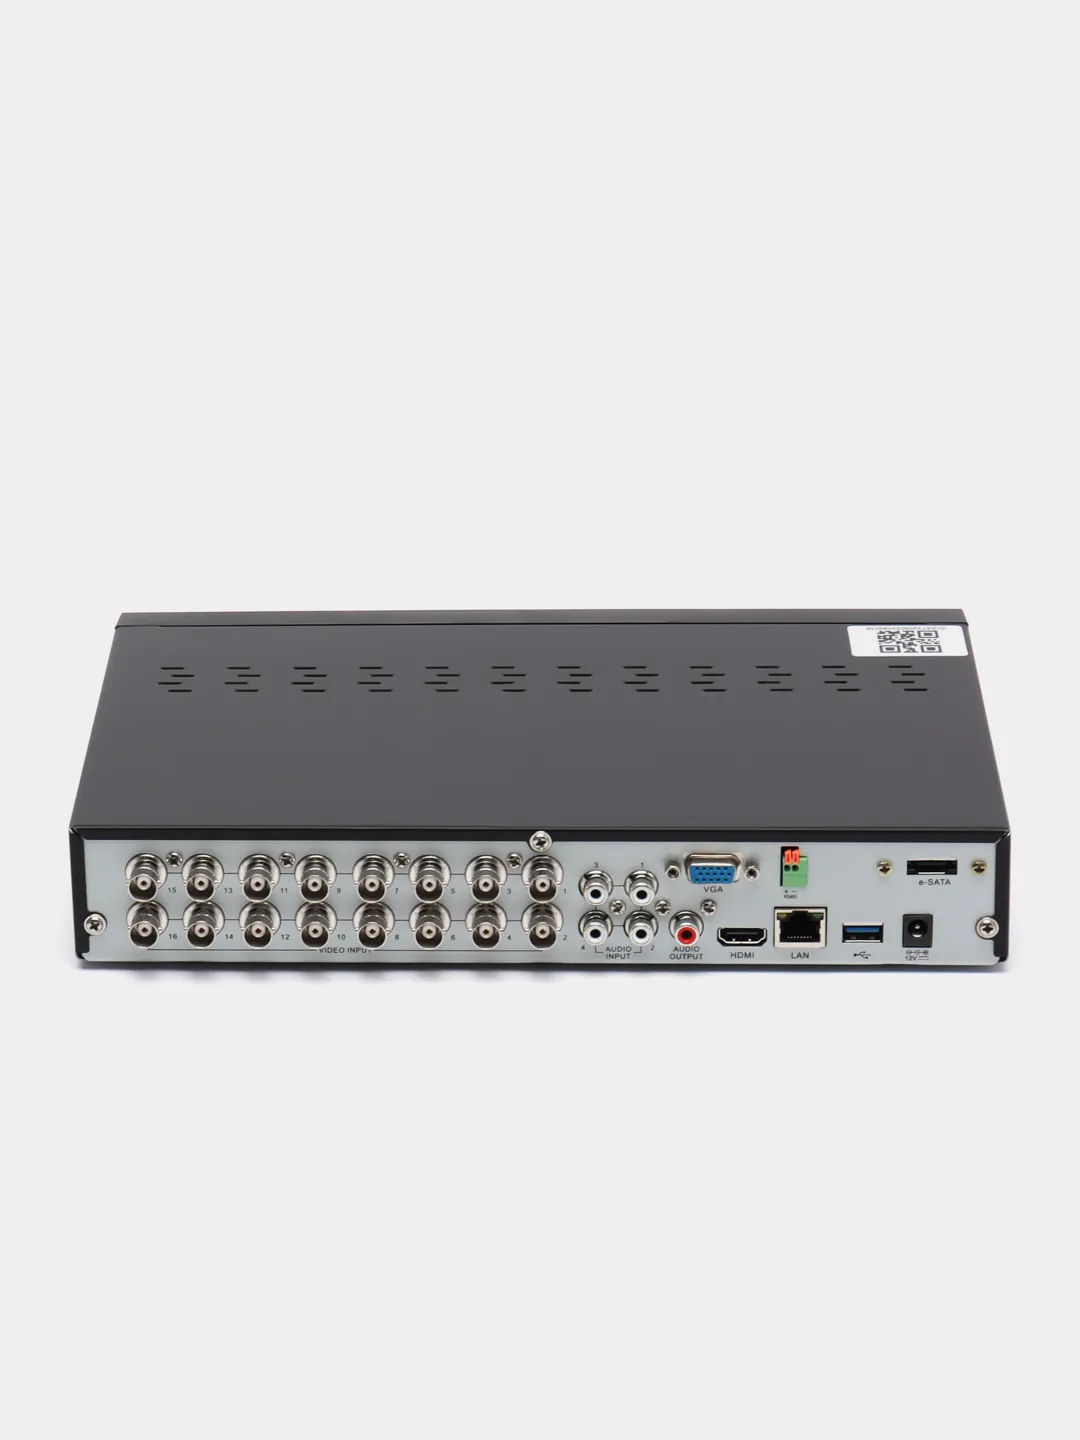 SVR-6110n v3.0 видеорегистратор гибридный. Подключение регистратора гибрид Эльбрус. Гибриды регистраторы